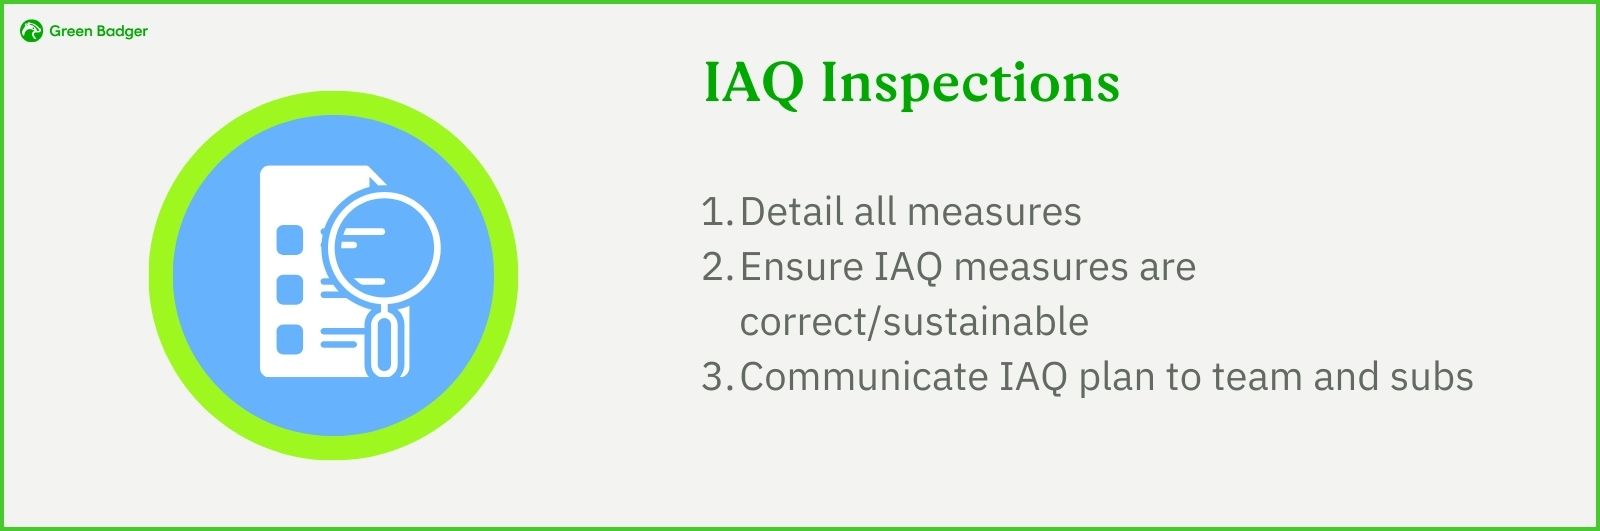 IAQ Inspections